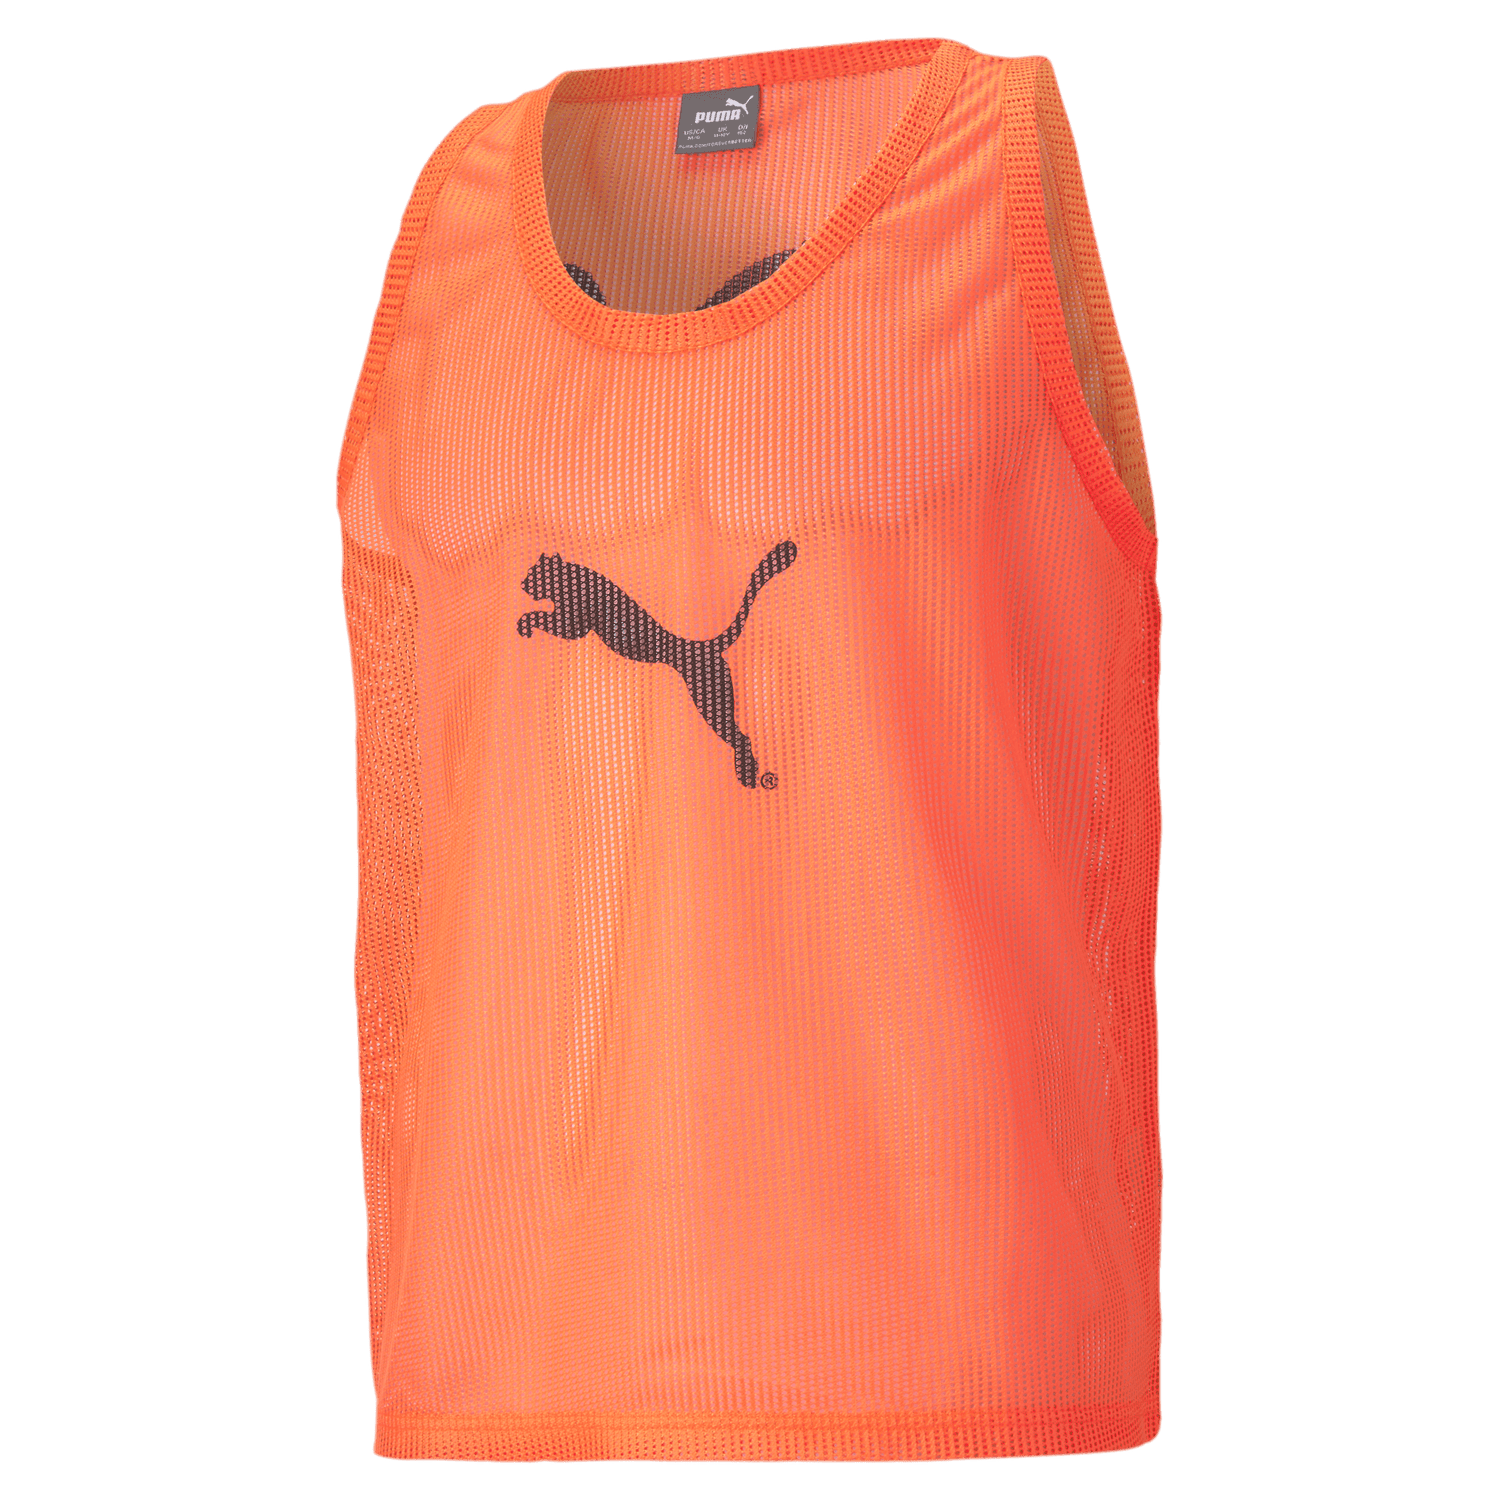 Puma Mens Training Vest Orange (Front)